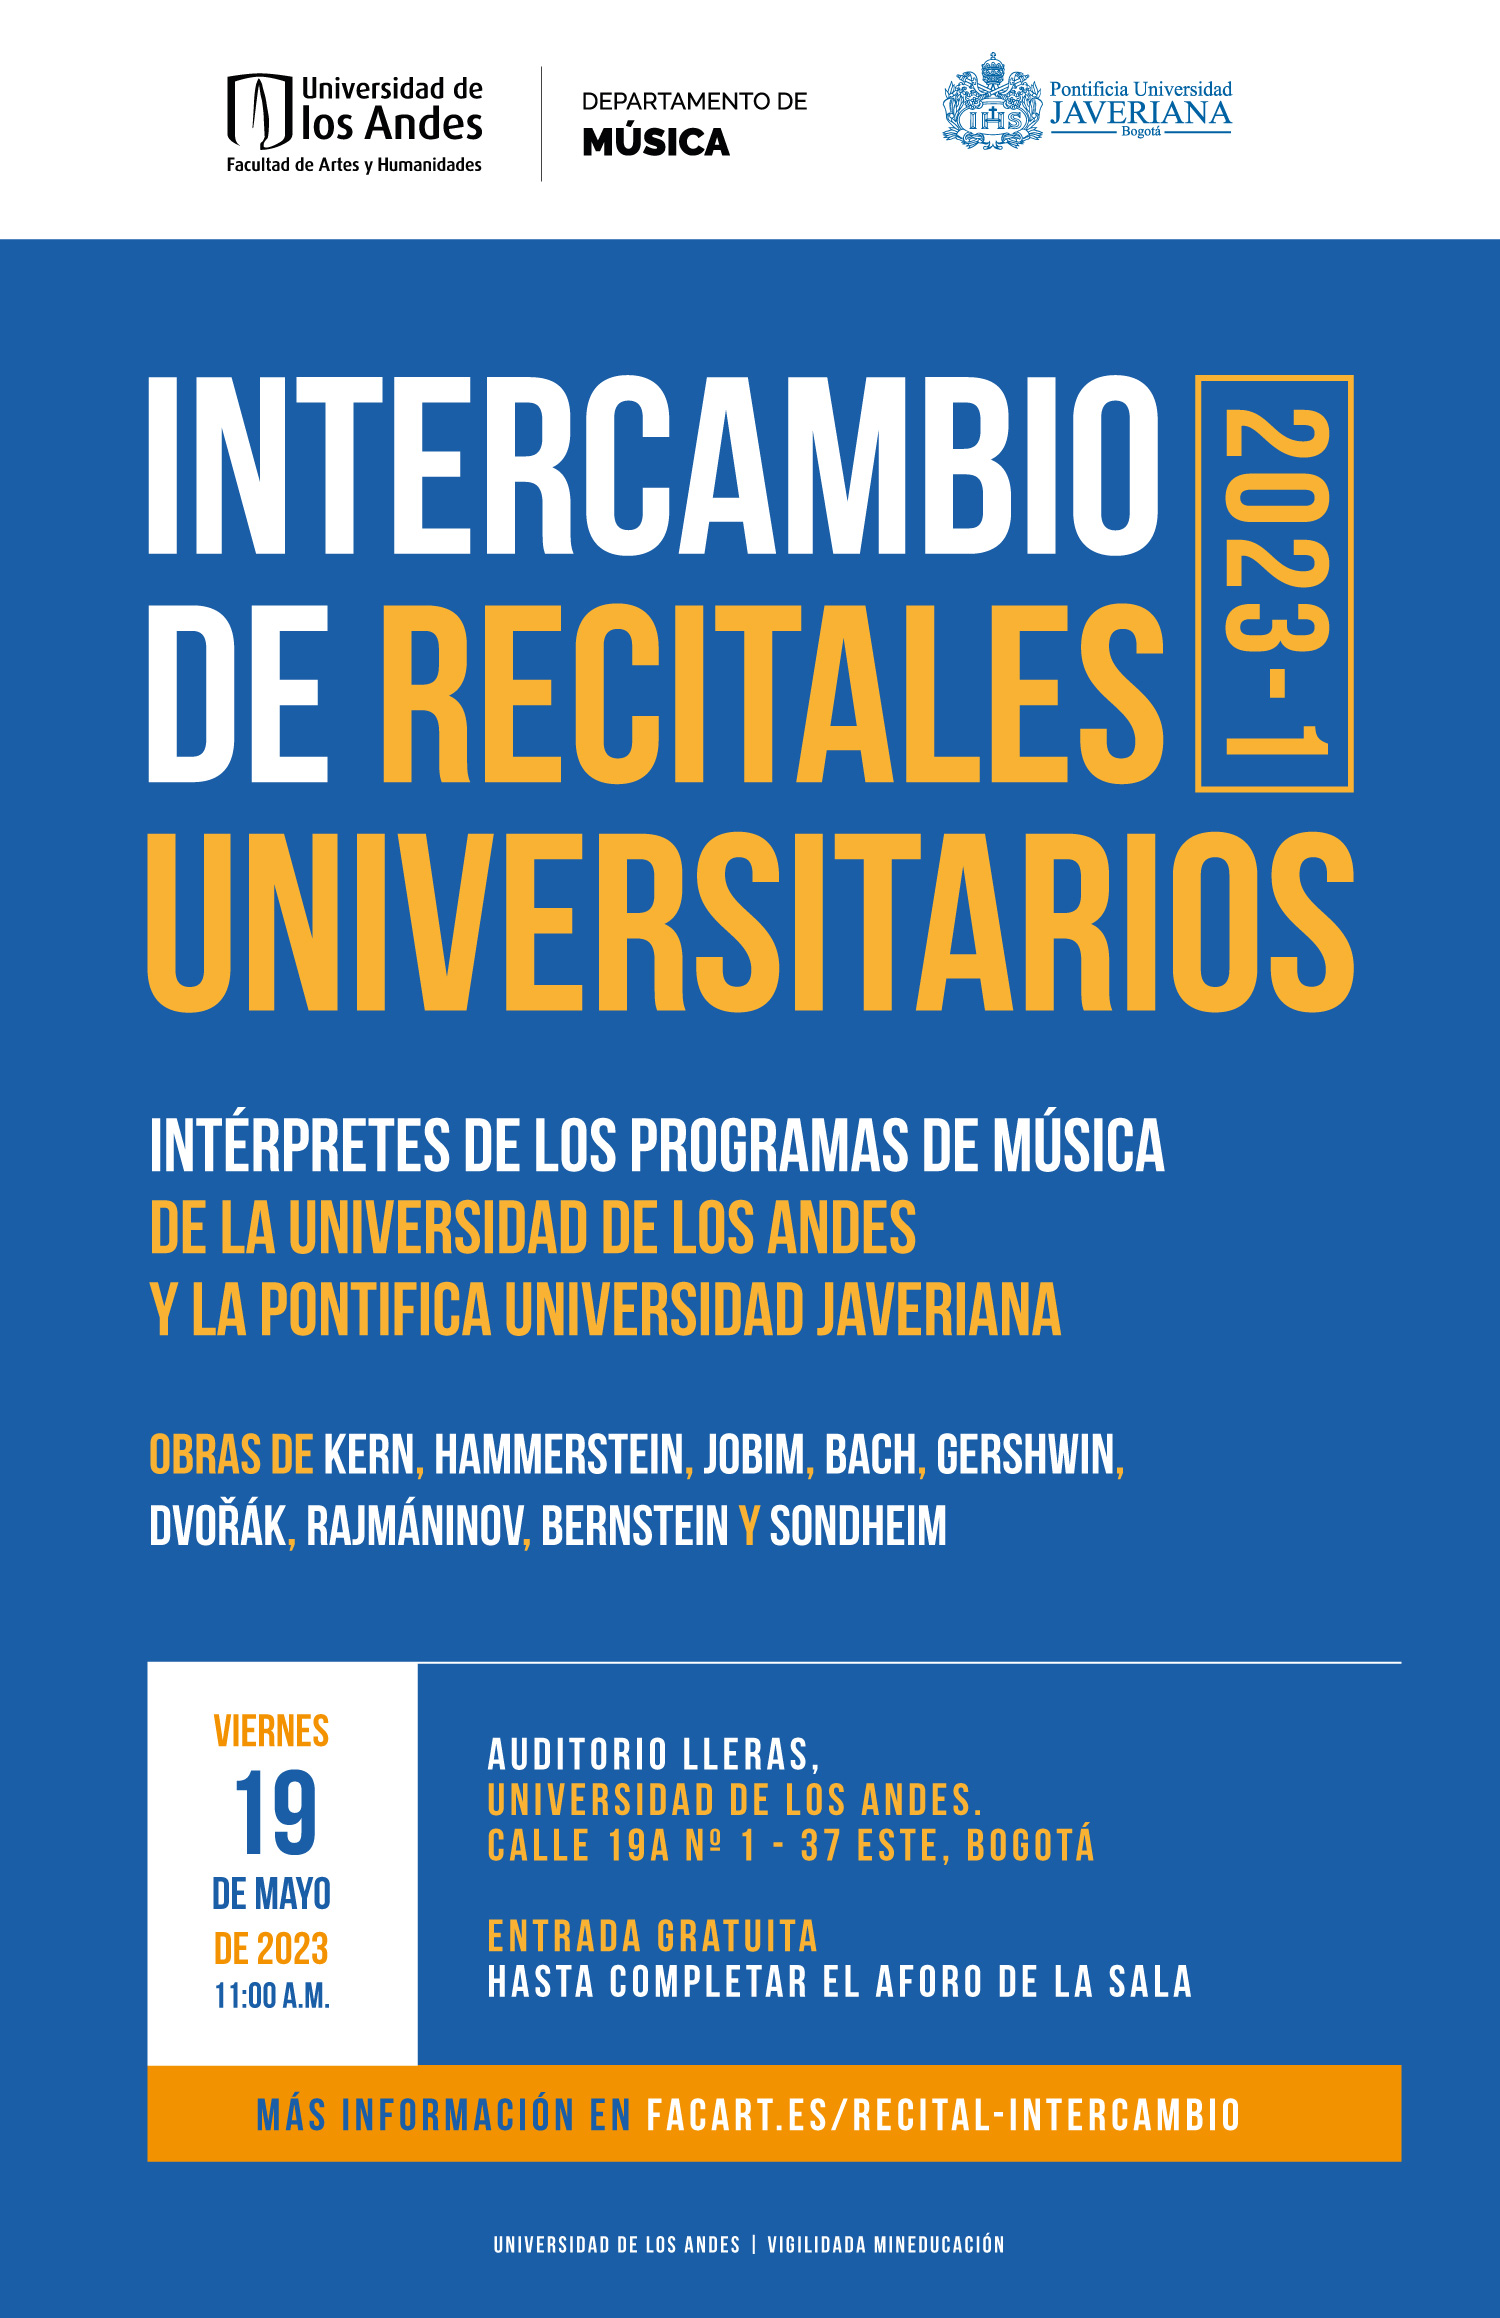 05-16-Intercambio-recitales-universitarios